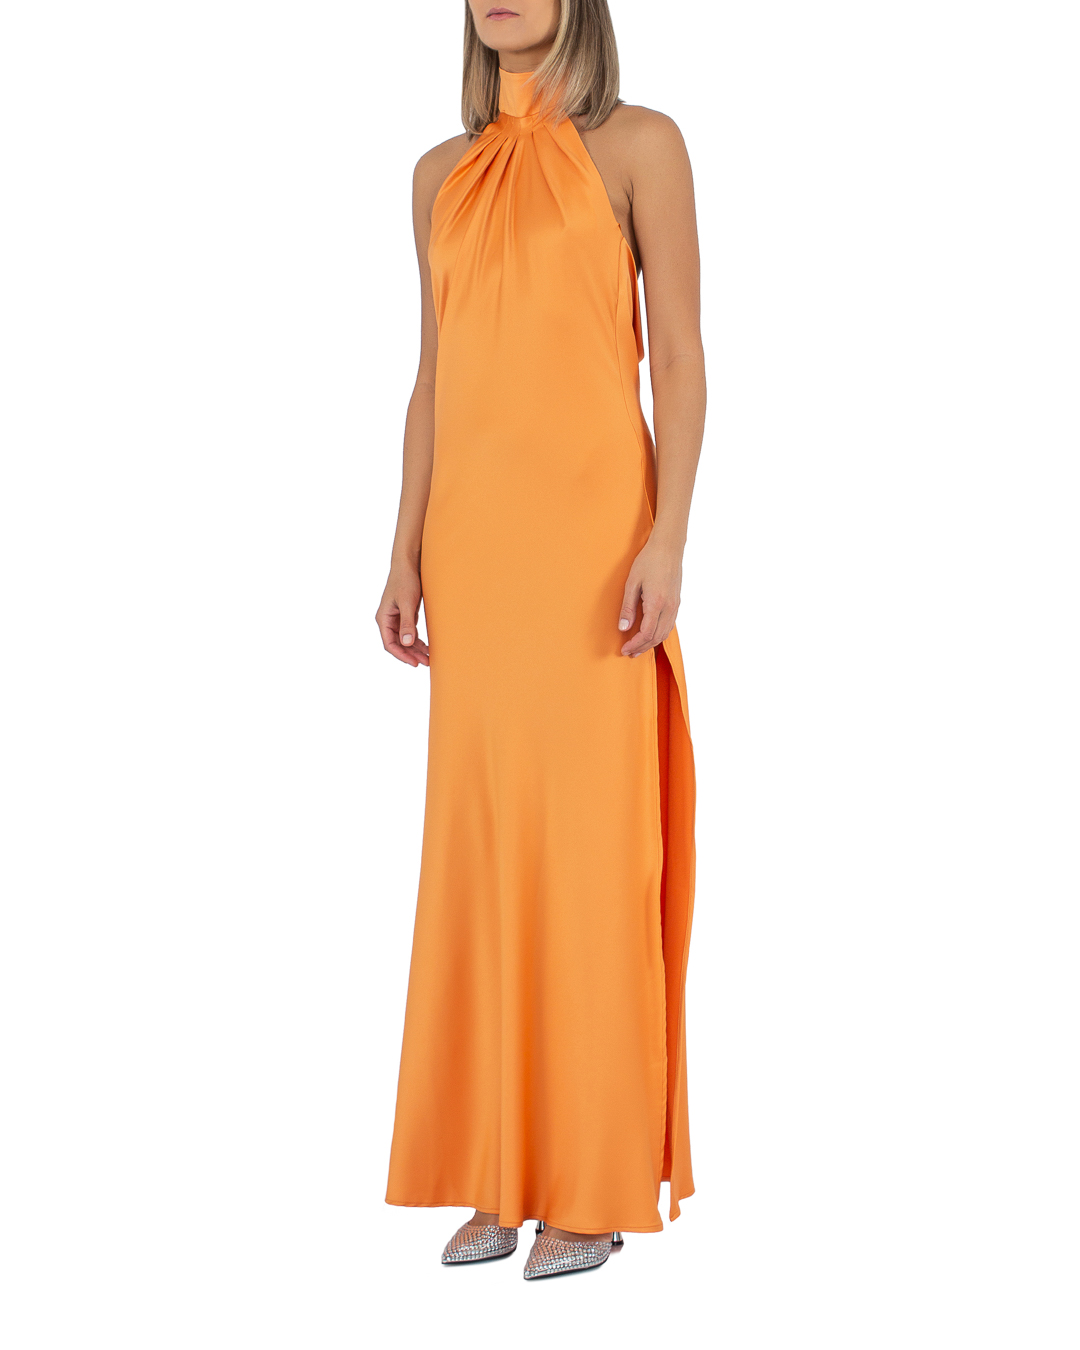 платье ACTUALEE 003810 оранжевый 46, размер 46 - фото 3